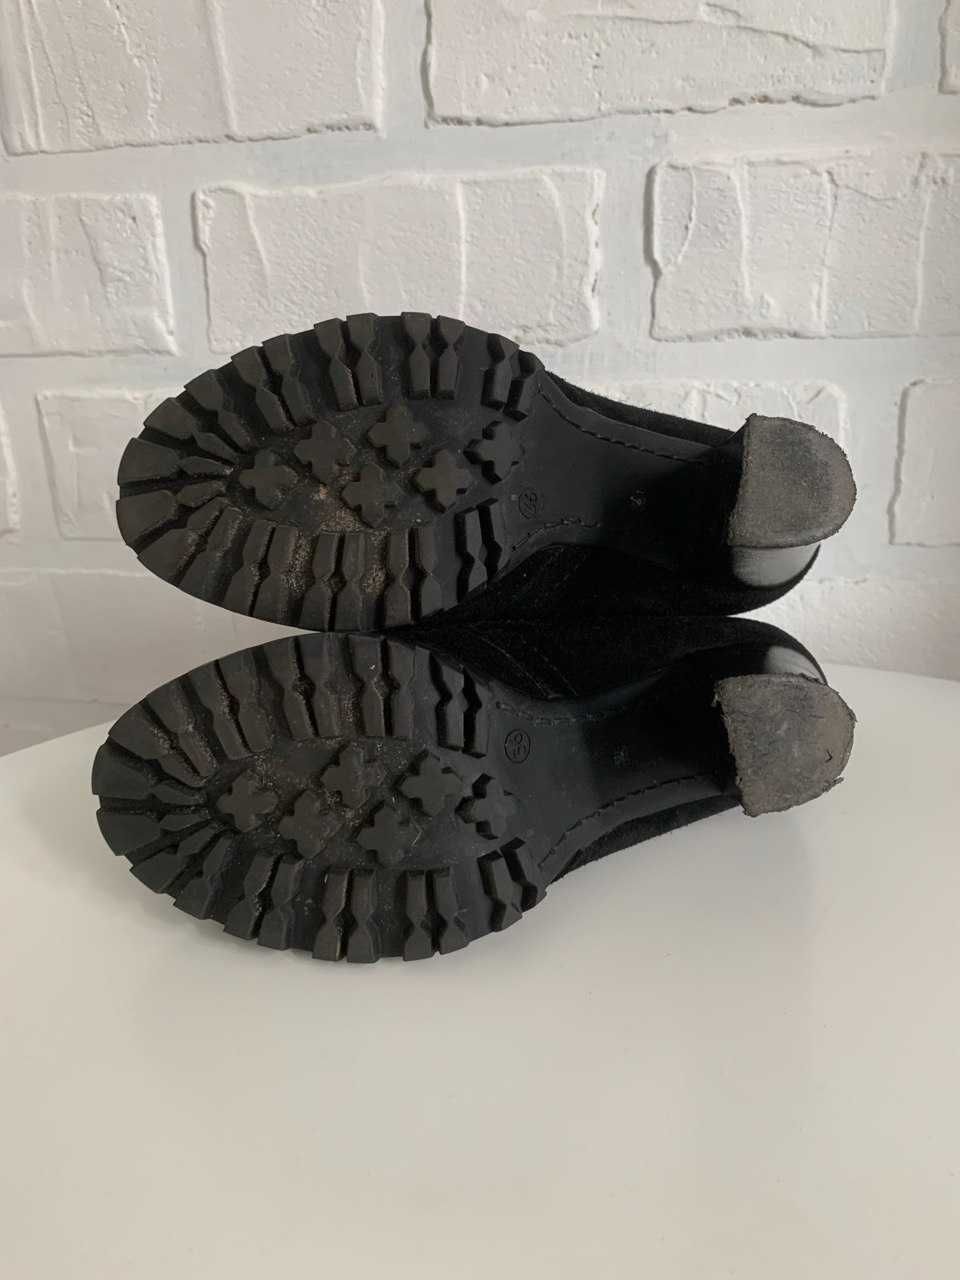 Женские замшевые черные ботильоны на каблуке (ботинки полуботинки)